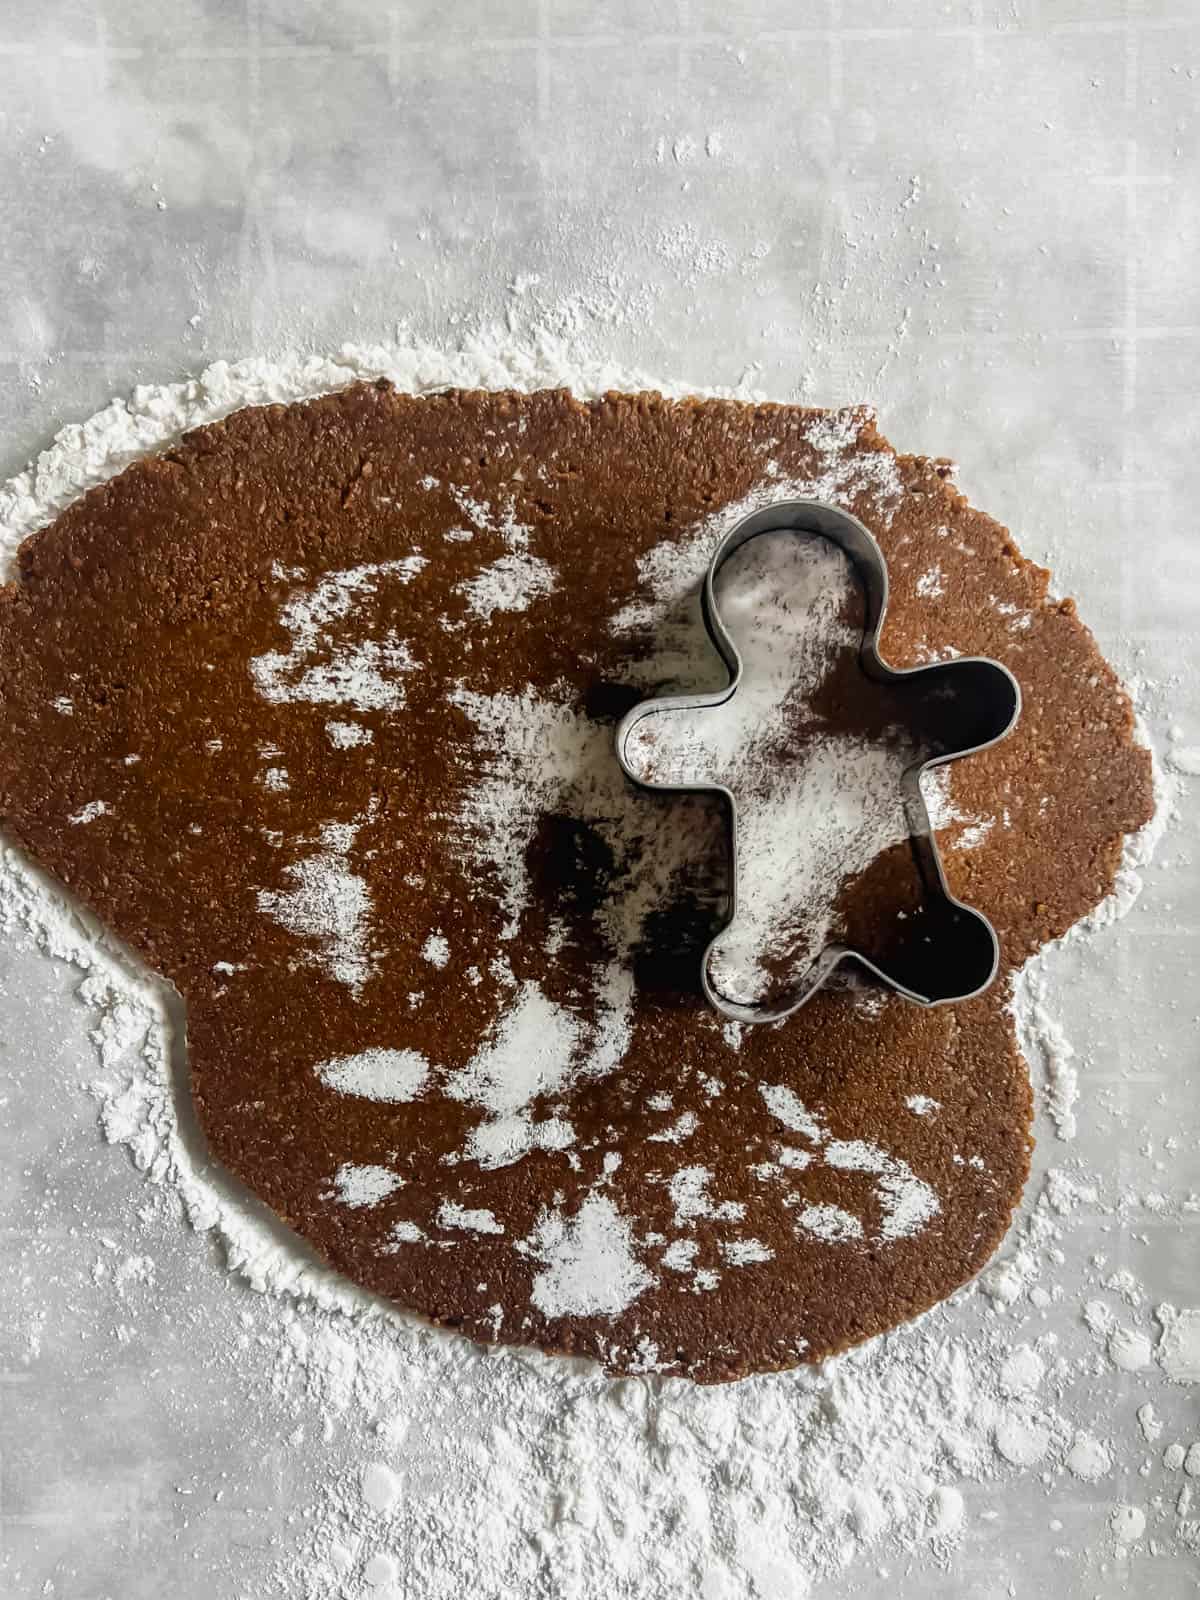 Cookie cutter in gingerbread dough.